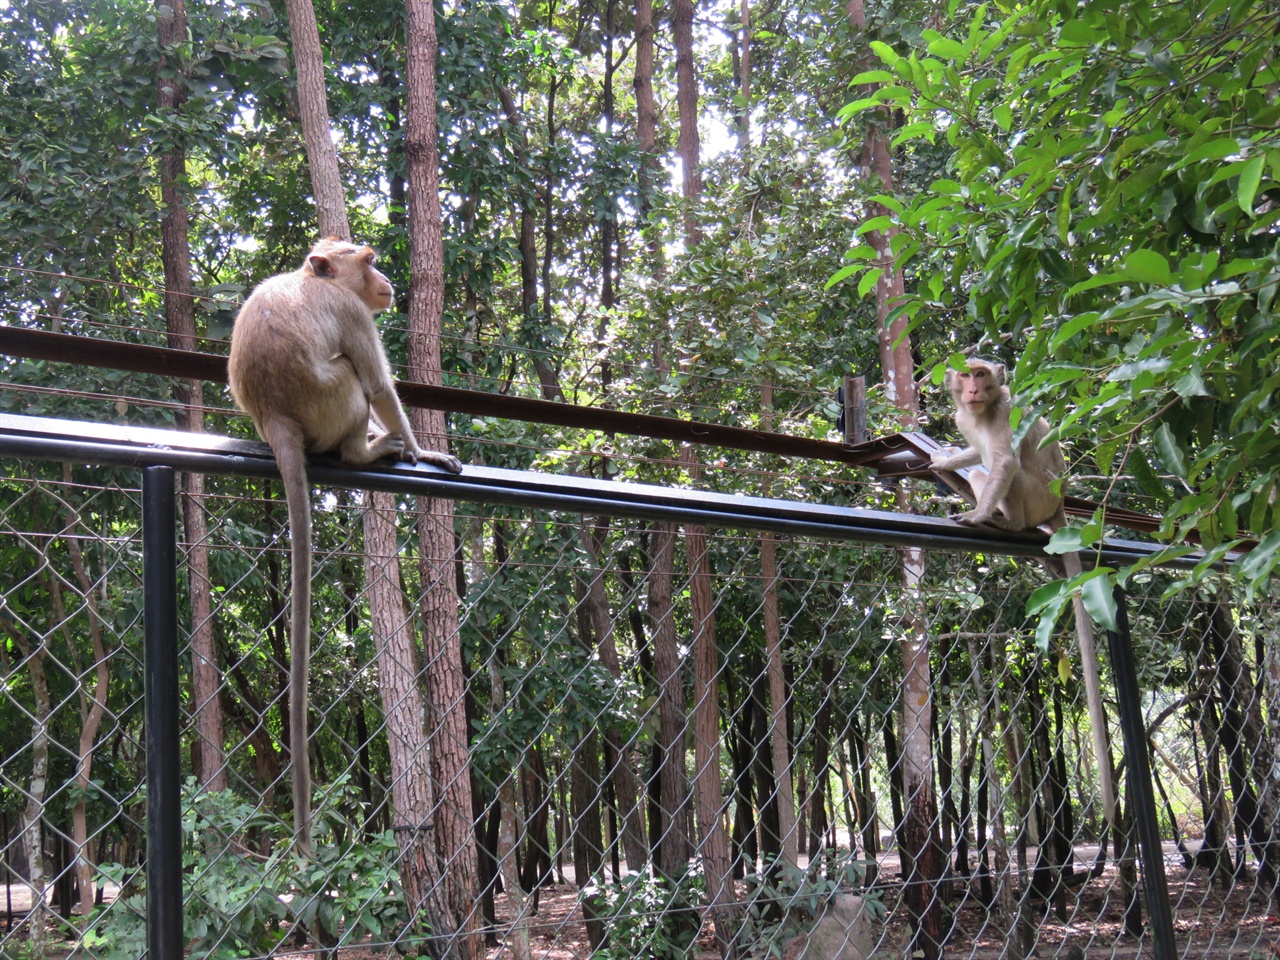  동물공원을 자유로이 돌아다니는 원숭이들.